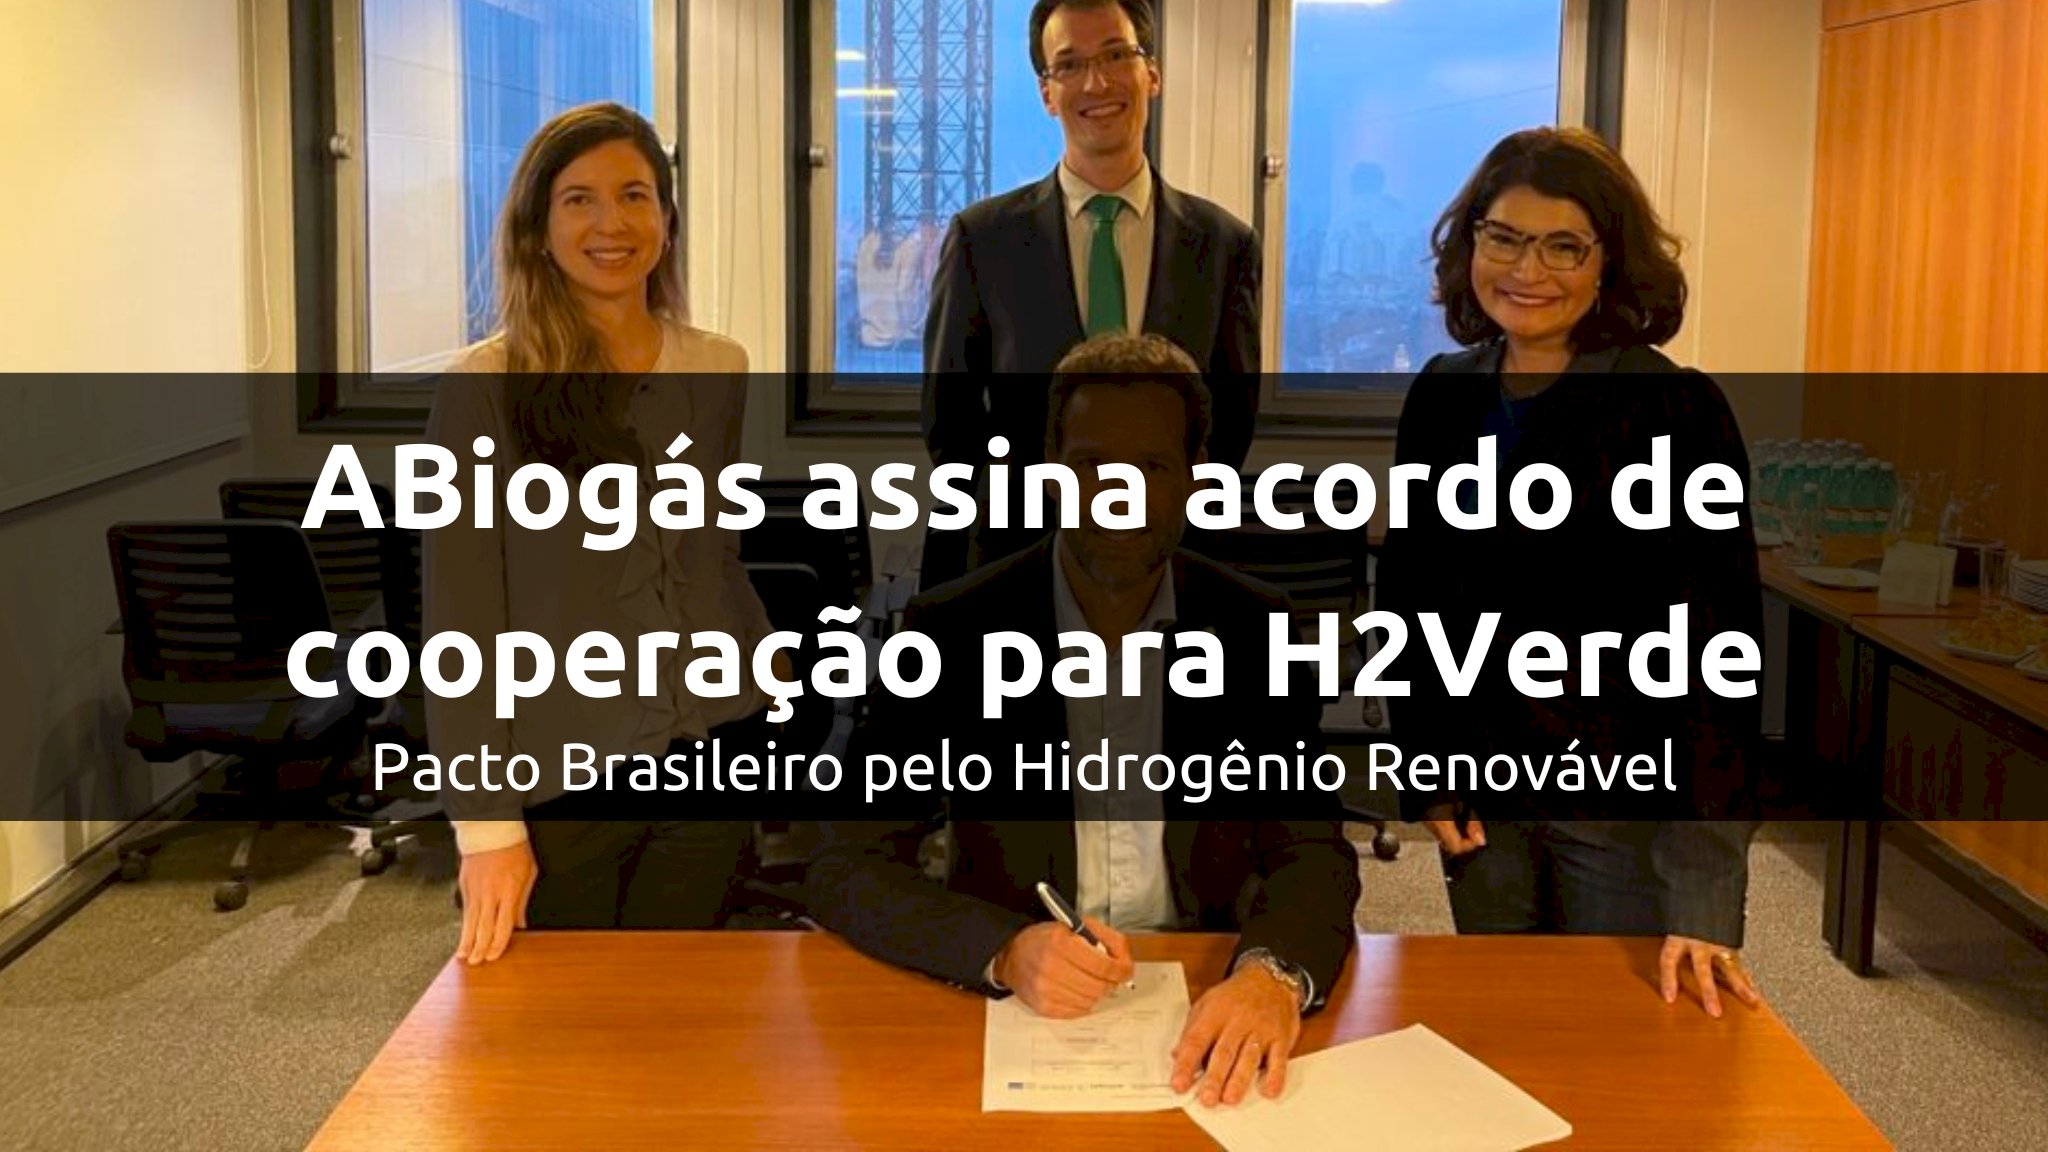 ABiogás assina acordo de cooperação, denominado Pacto Brasileiro pelo Hidrogênio Renovável